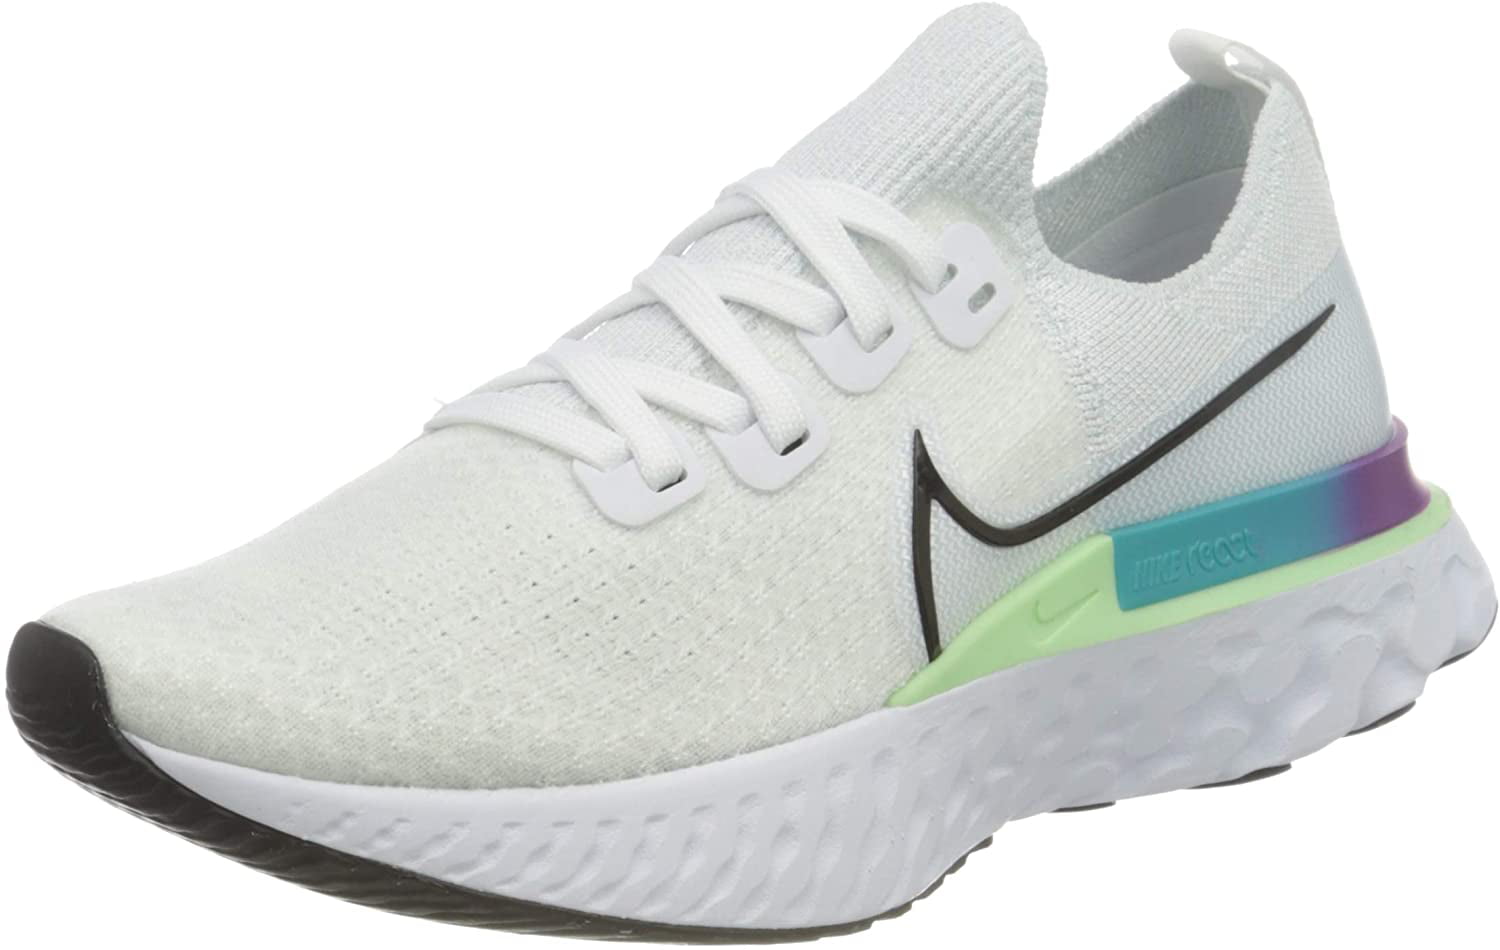 Nike Women's Flyknit Running Shoes, White/Aqua, 10.5 B(M) US - Walmart.com